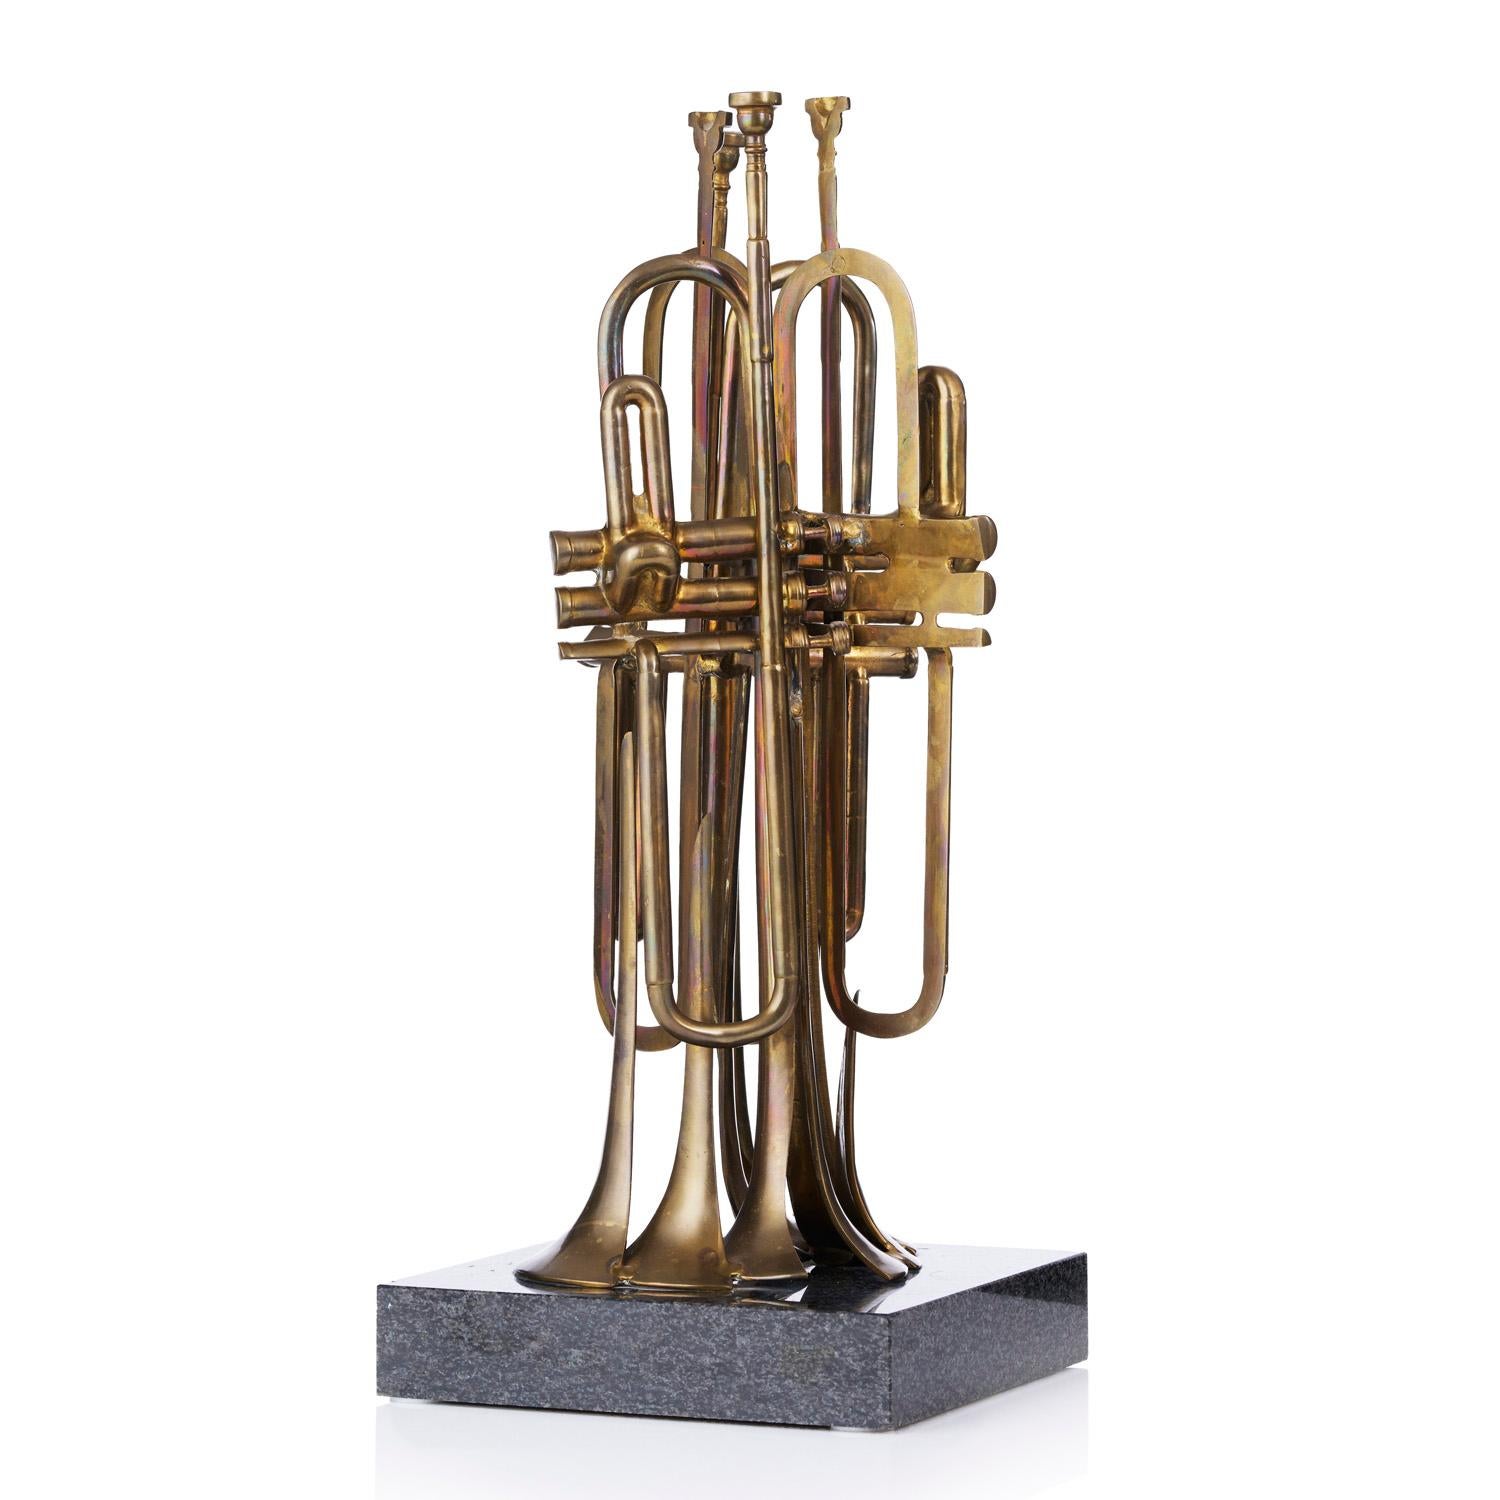 La trompette coupée - Sculpture de Fernandez Arman